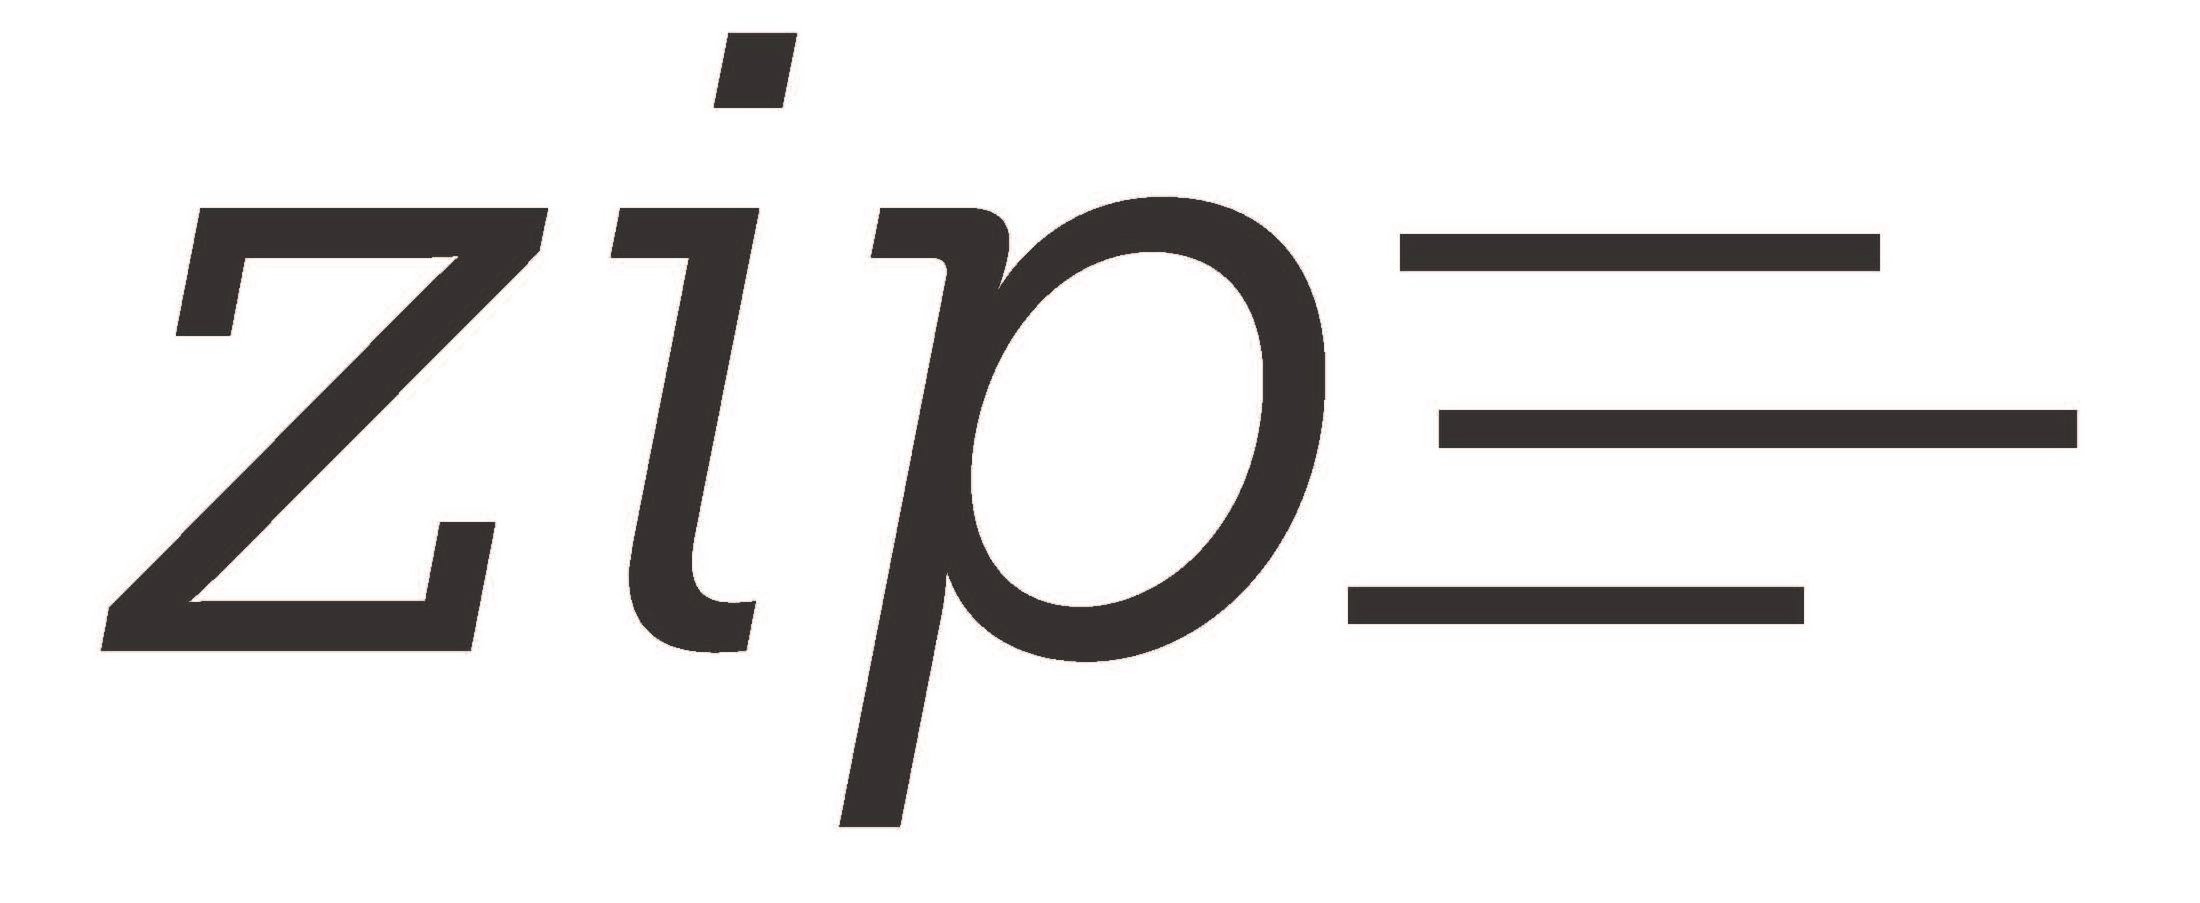 Trademark Logo ZIP